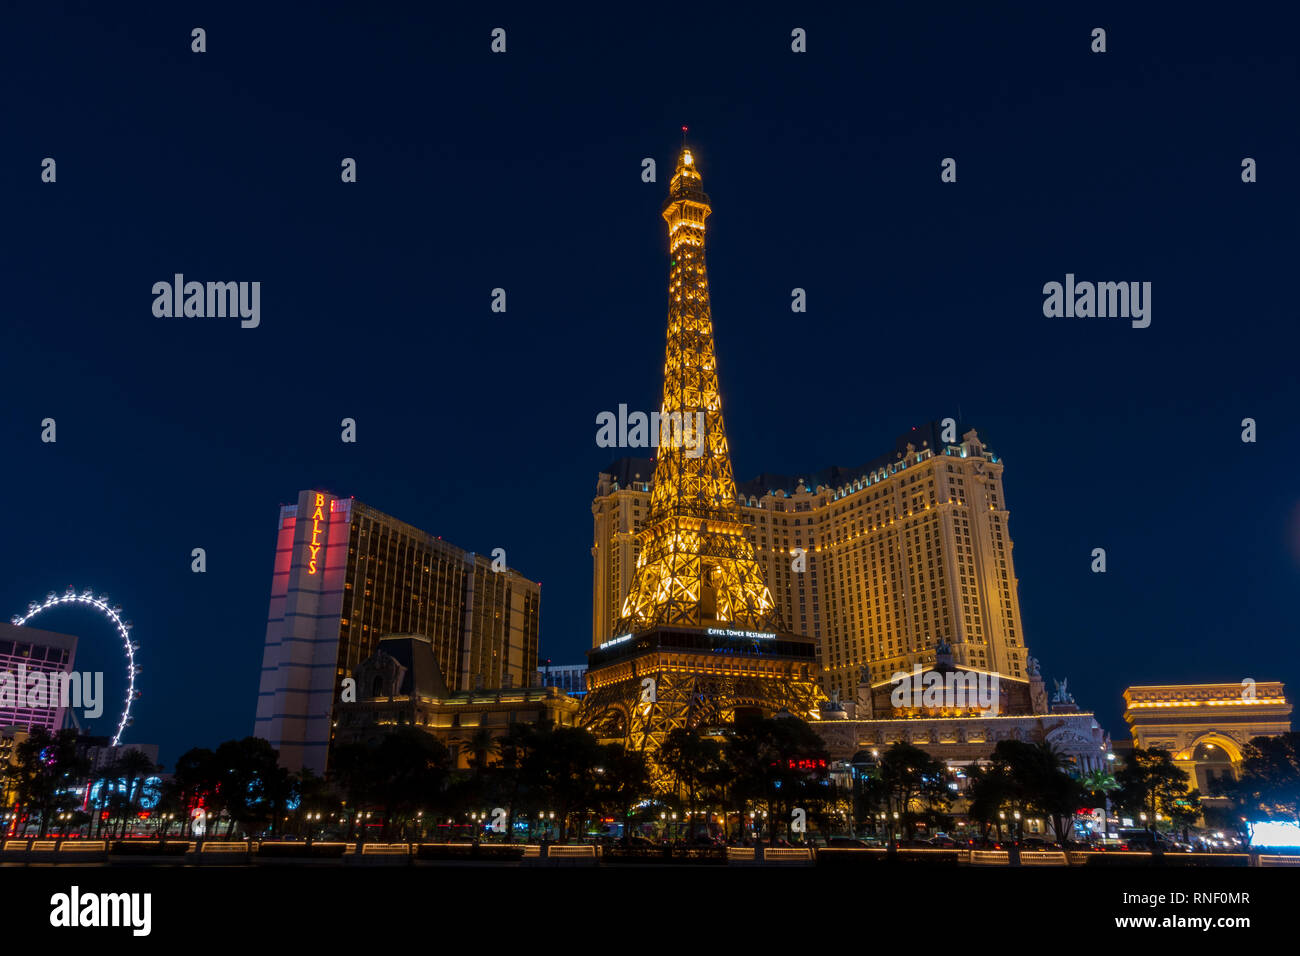 Paris Las Vegas at night, Las Vegas, Nevada, United States. Stock Photo